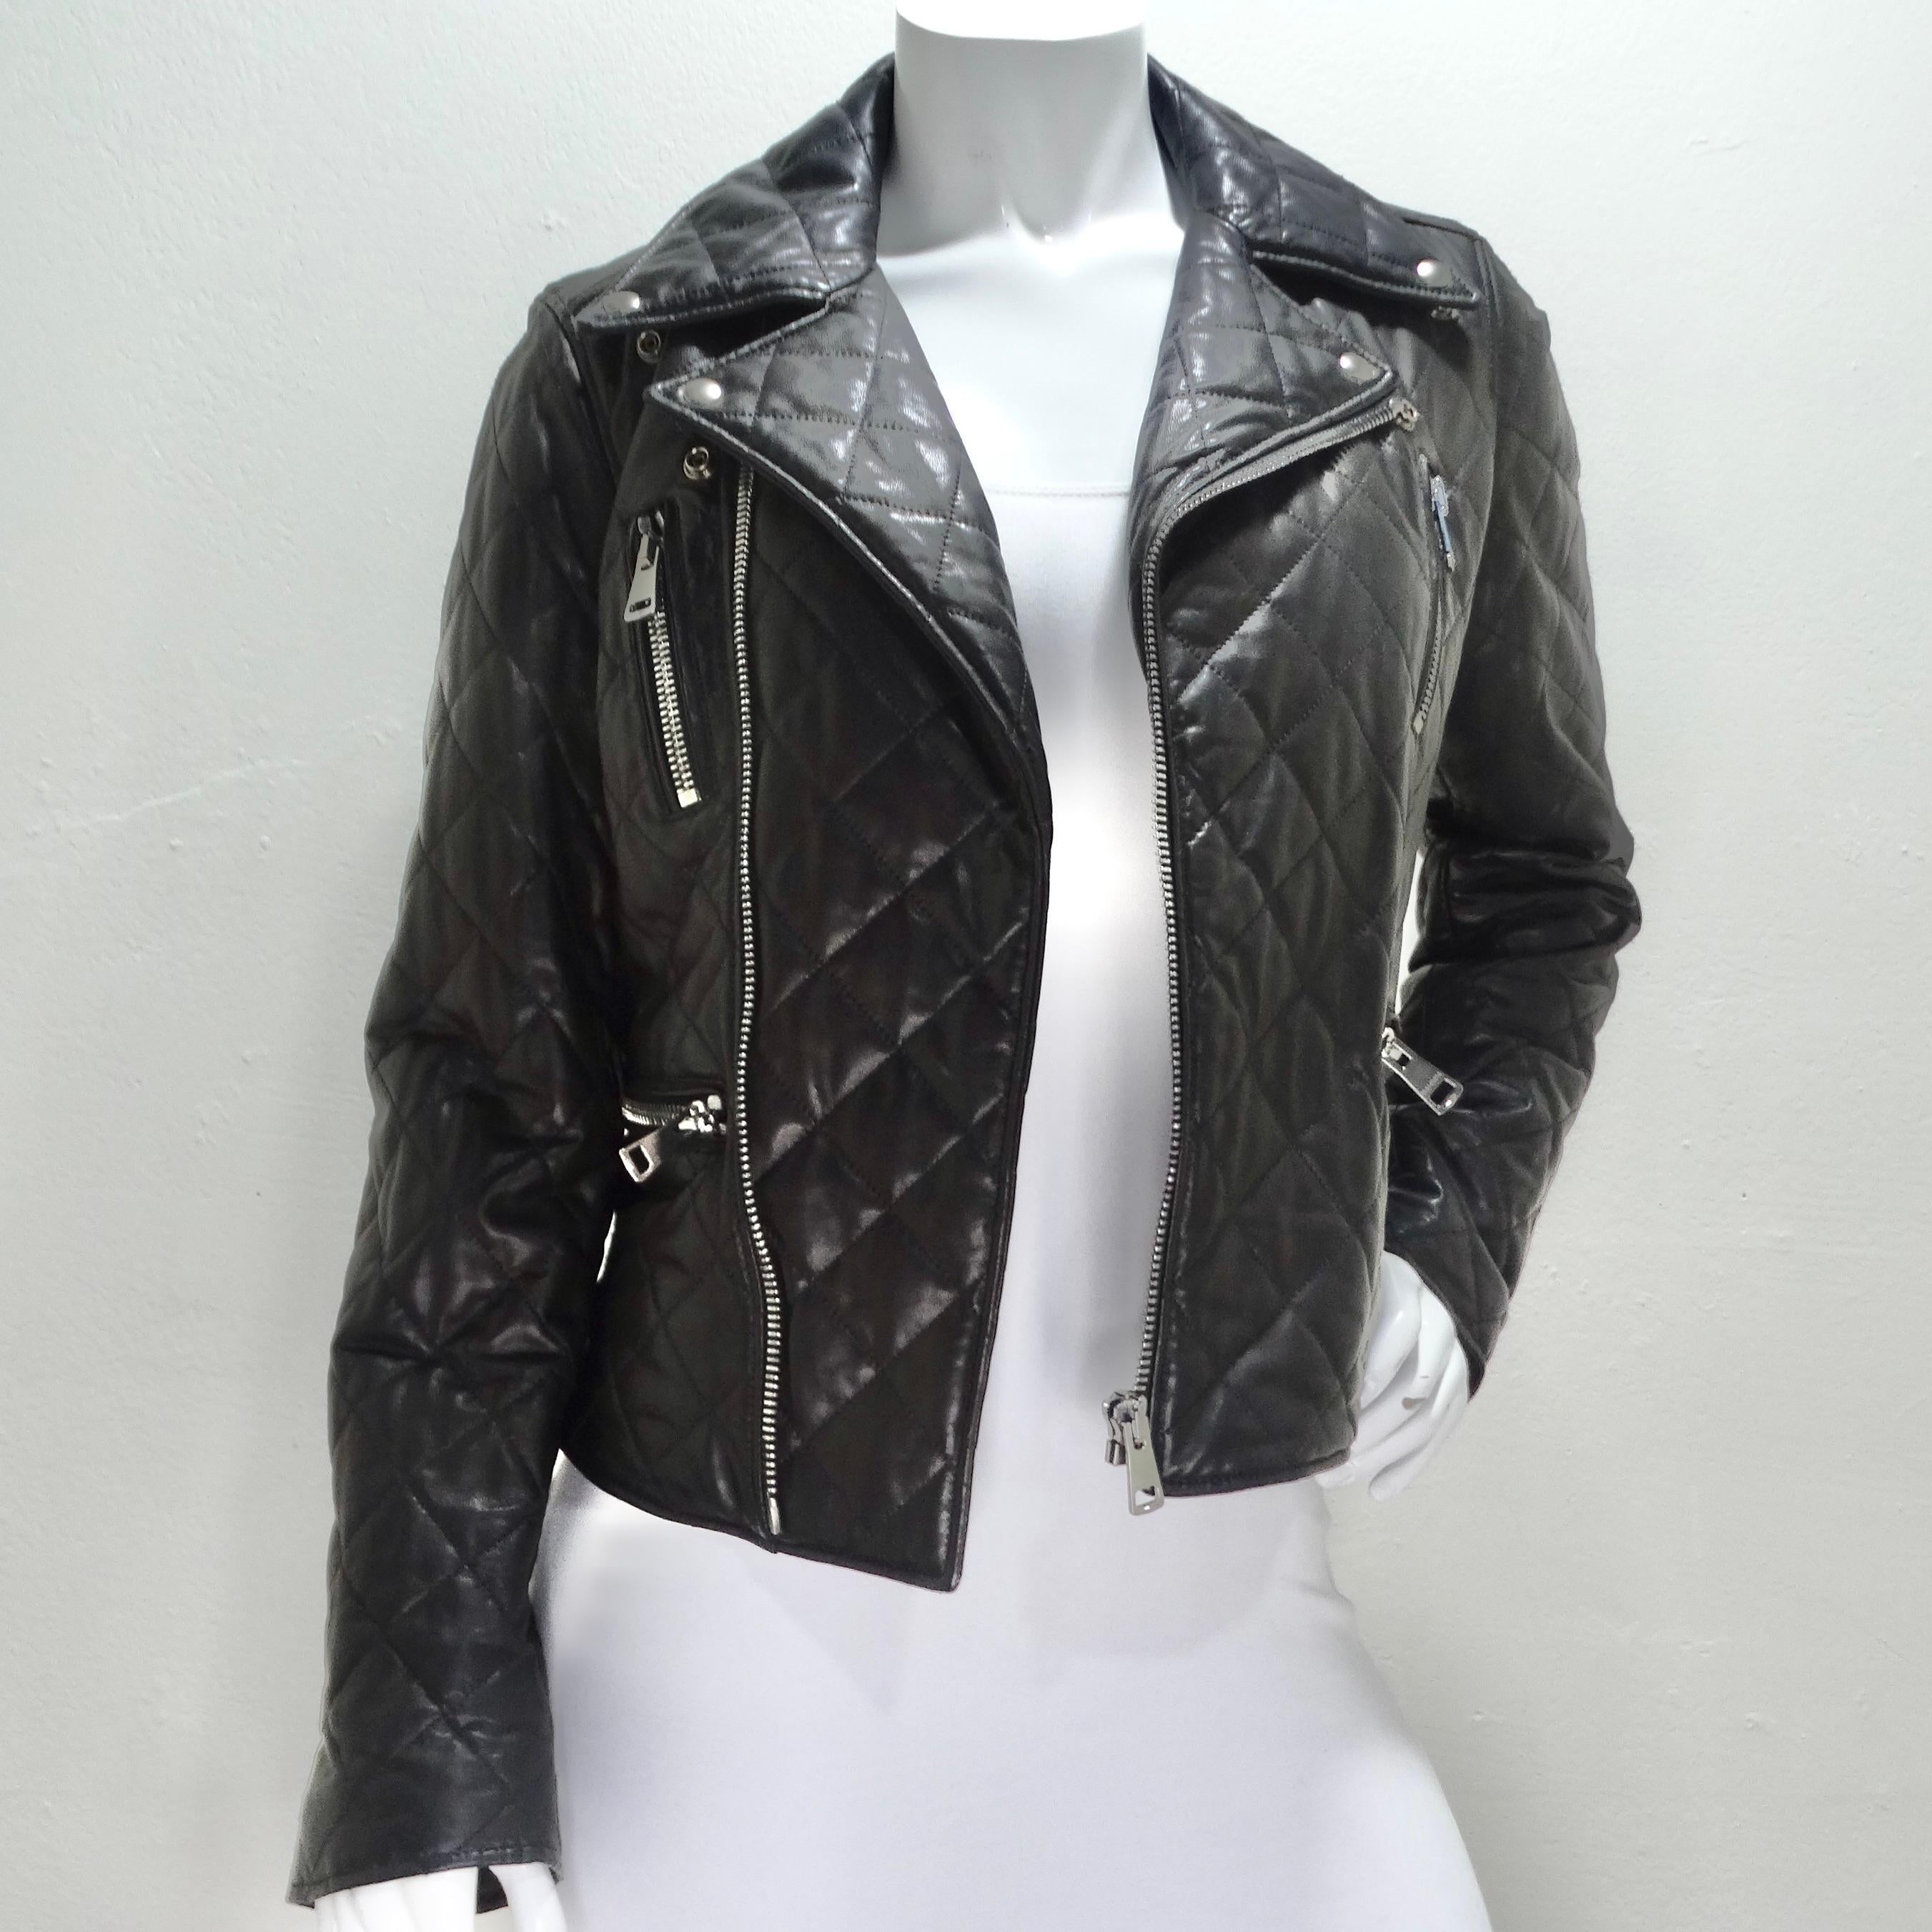 Der Inbegriff von Luxus und Stil - die Gucci Black Leather Pearl Logo Moto Jacket. Diese klassische Lederjacke im Moto-Stil ist mehr als nur ein Kleidungsstück; sie ist ein Statement für Raffinesse und Glamour. Diese in Italien gefertigte Jacke